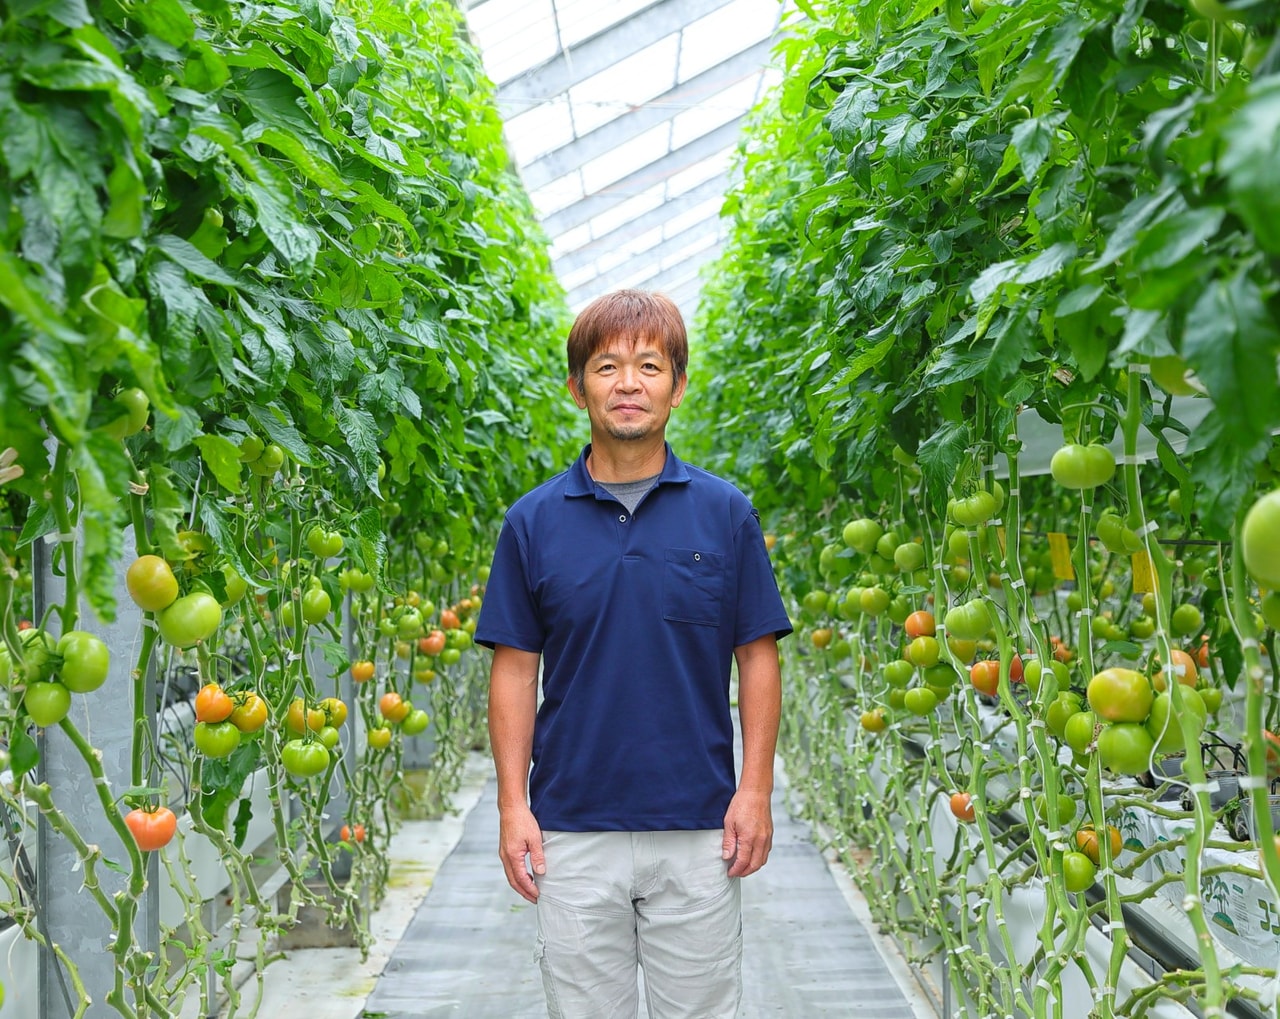 仲間とともに高糖度トマト「麗」の栽培に励む。愛知県豊橋市のトマト農家大竹浩史さん